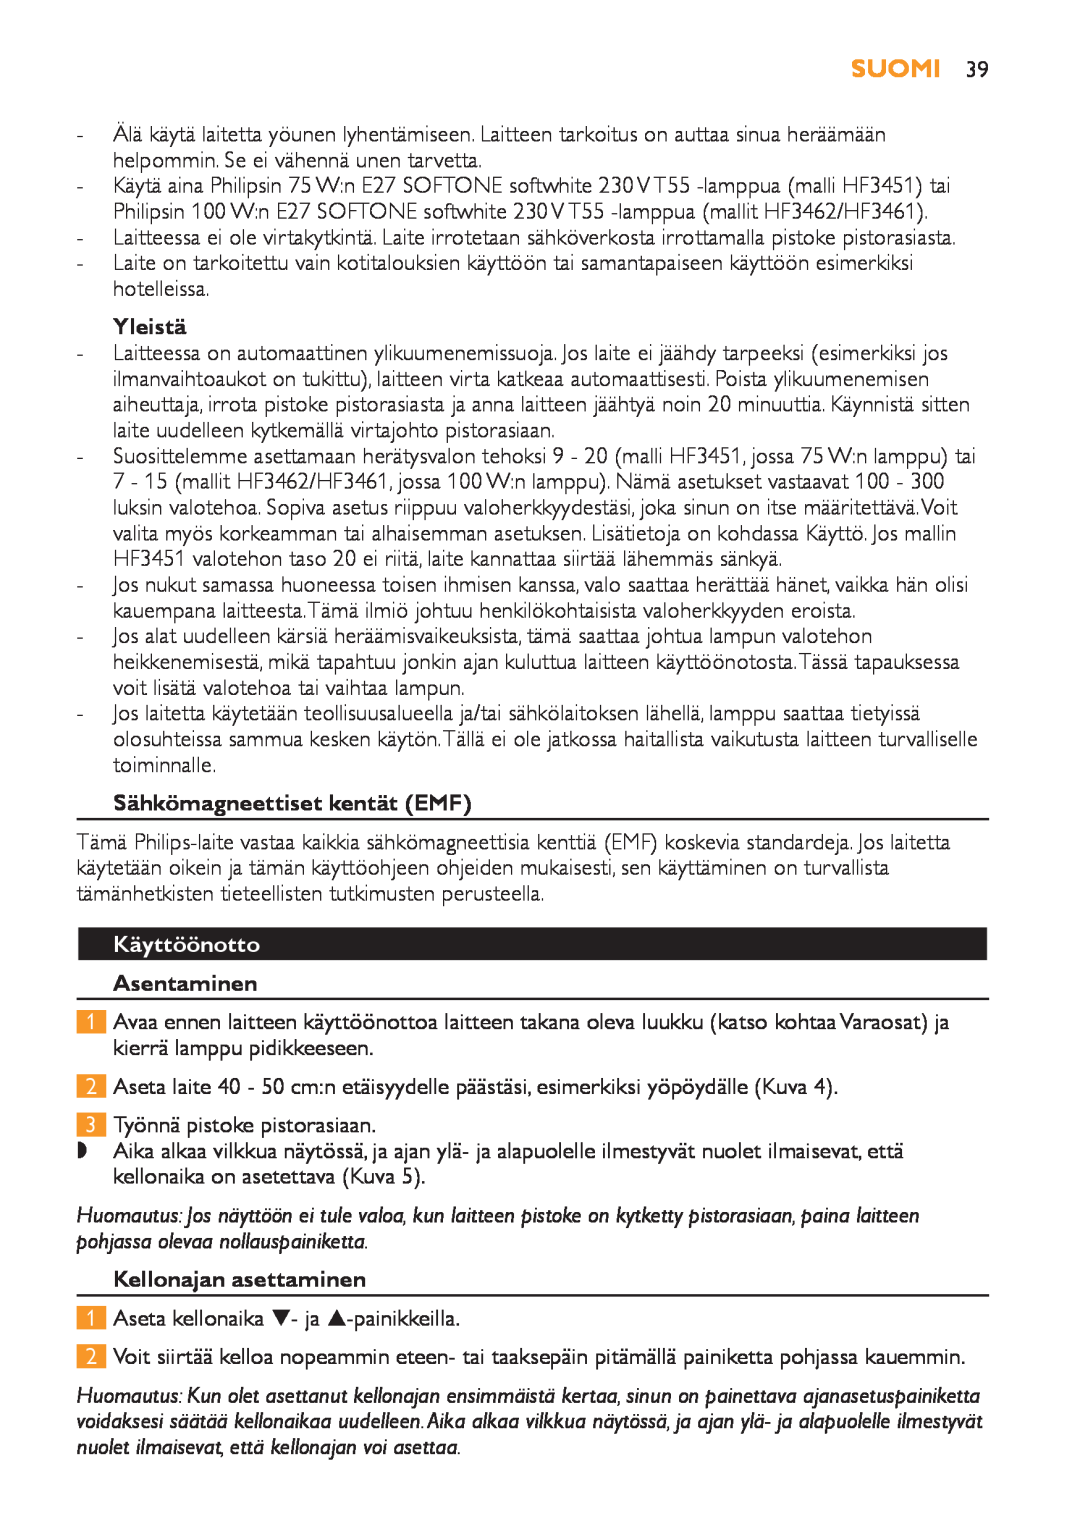 Philips HF3451 manual Suomi, Yleistä, Sähkömagneettiset kentät EMF, Käyttöönotto, Asentaminen, Kellonajan asettaminen 